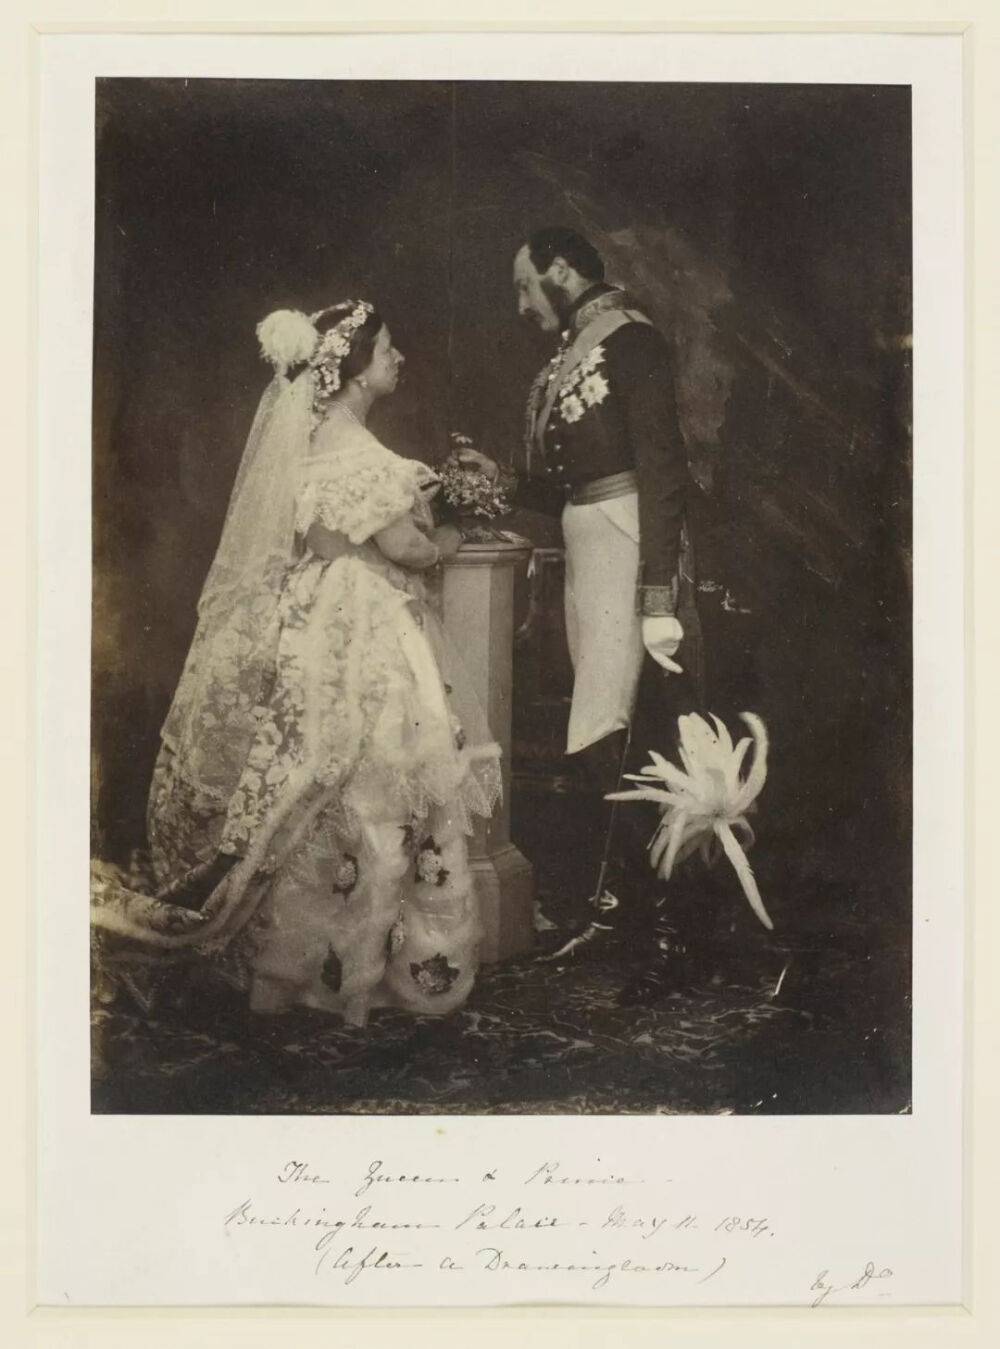 这张珍贵的照片拍摄于白金汉宫身着婚纱的维多利亚与夫君深情凝视